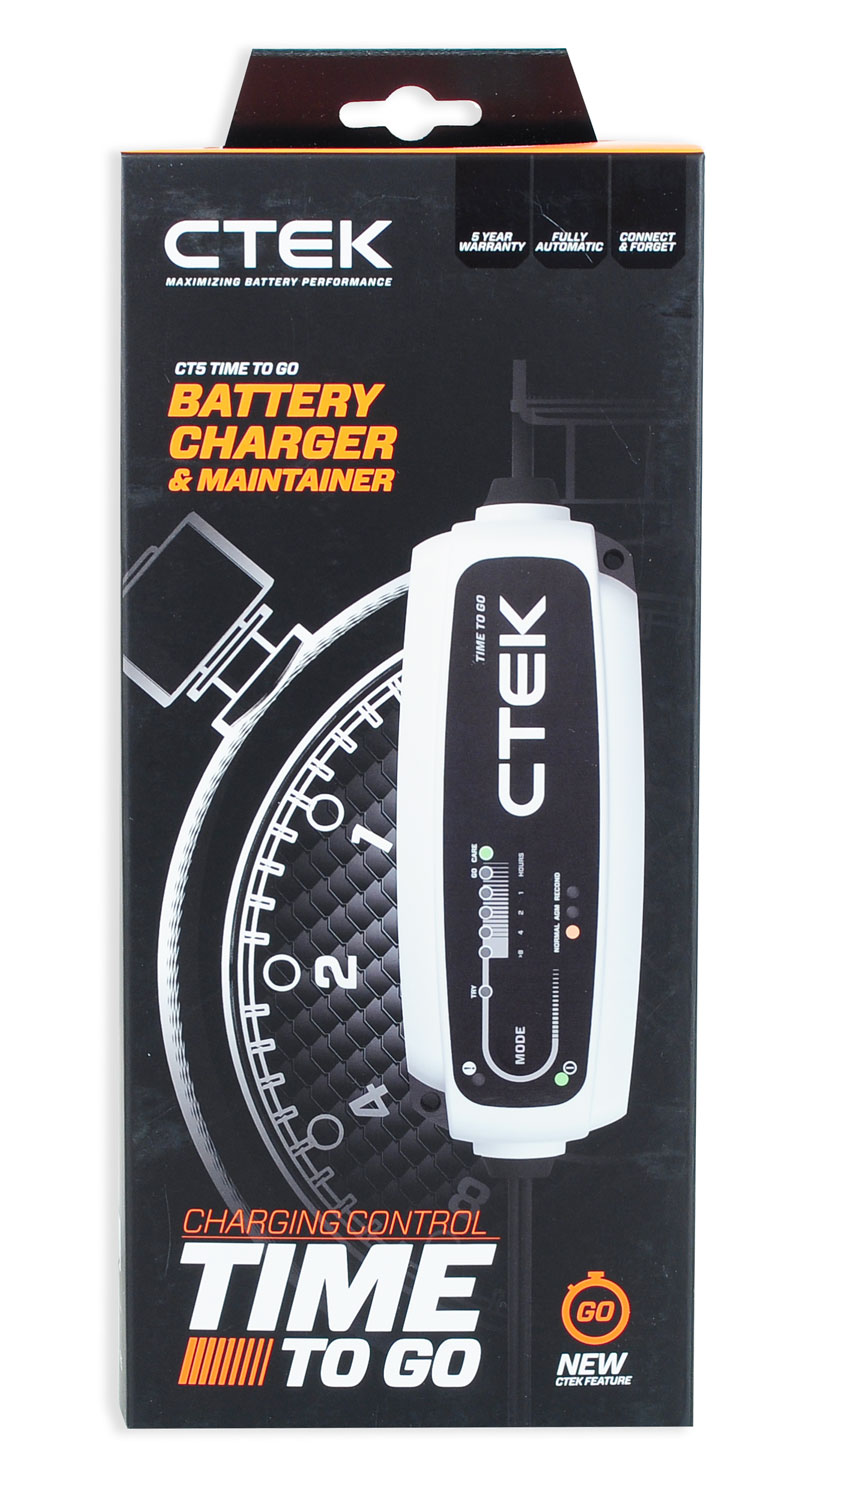 Ctek CT5 Time to go Batterieladegerät 12V-5Ah